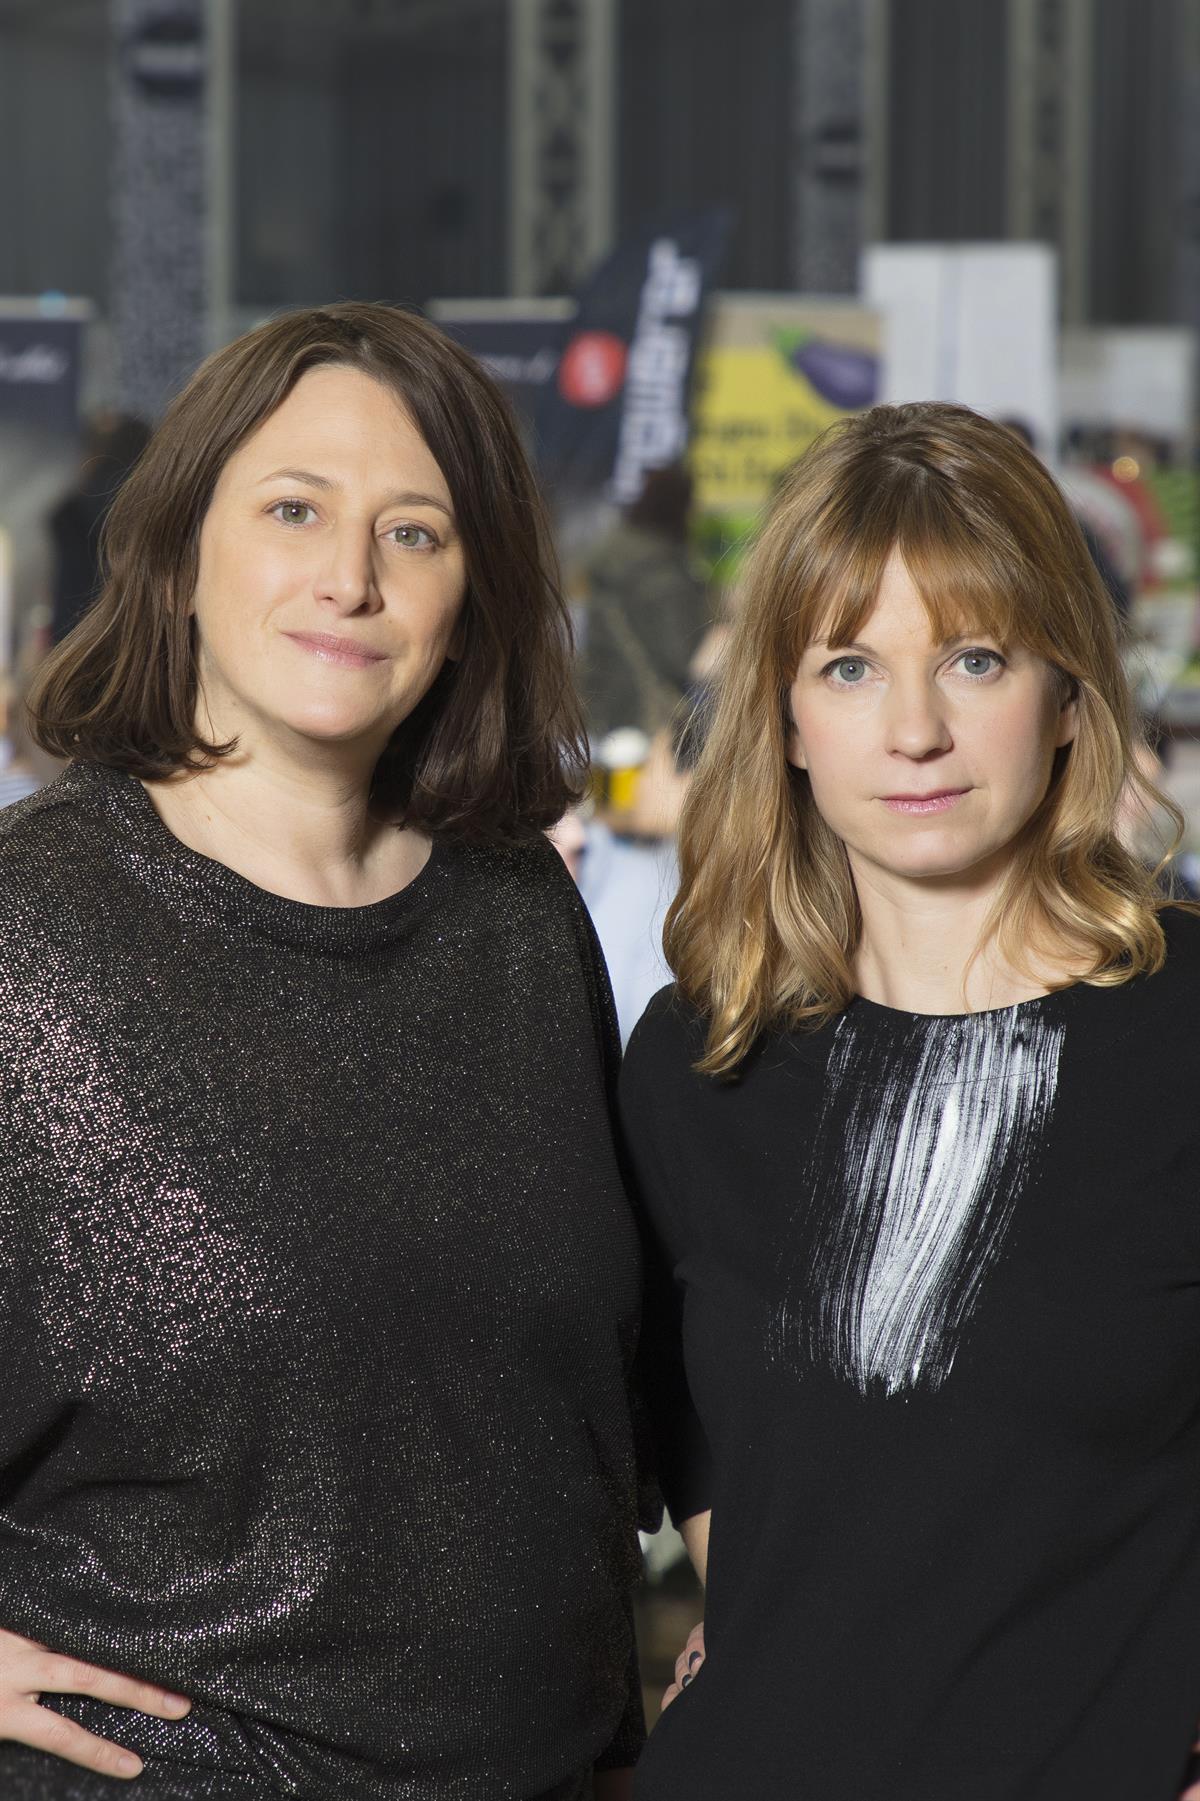 vlnr. Designmarkt Edelstoff - Gründerinnen-Duo Sabine Hofstätter und Simone Aichholzer_3